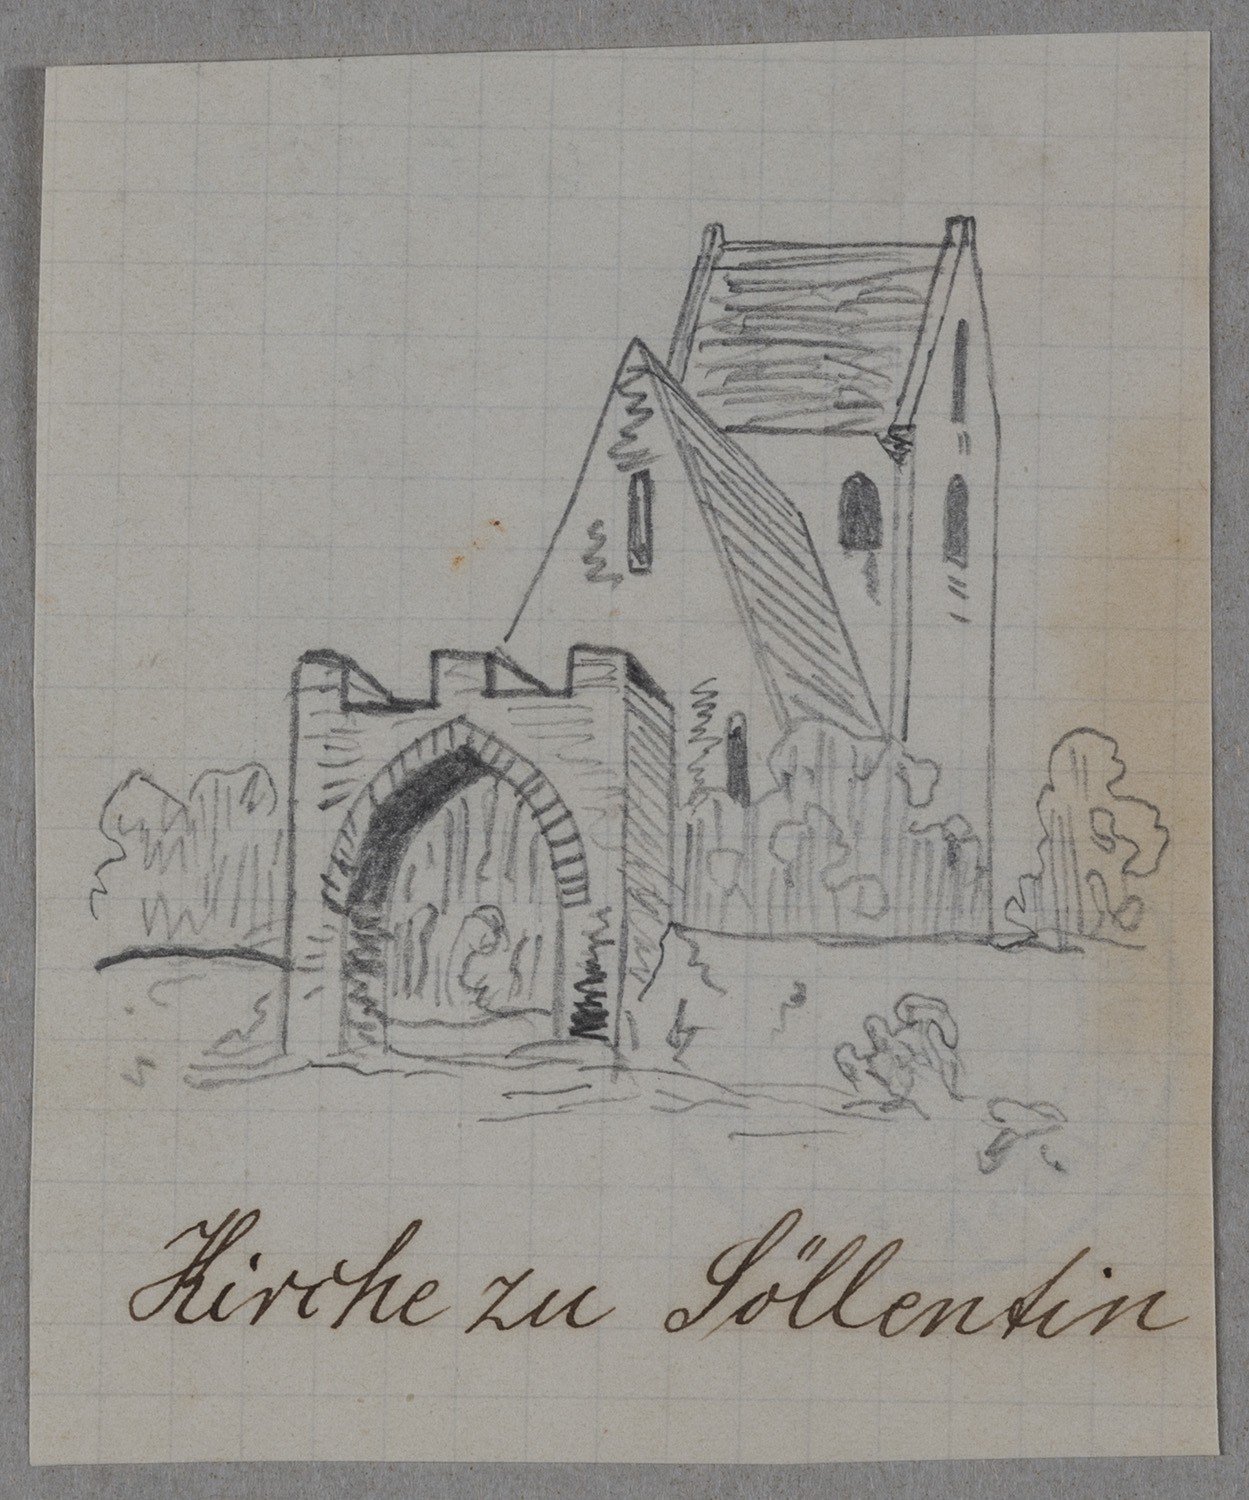 Söllenthin (Kr. Westprignitz): Dorfkirche und Kirchhofsportal (Landesgeschichtliche Vereinigung für die Mark Brandenburg e.V., Archiv CC BY)